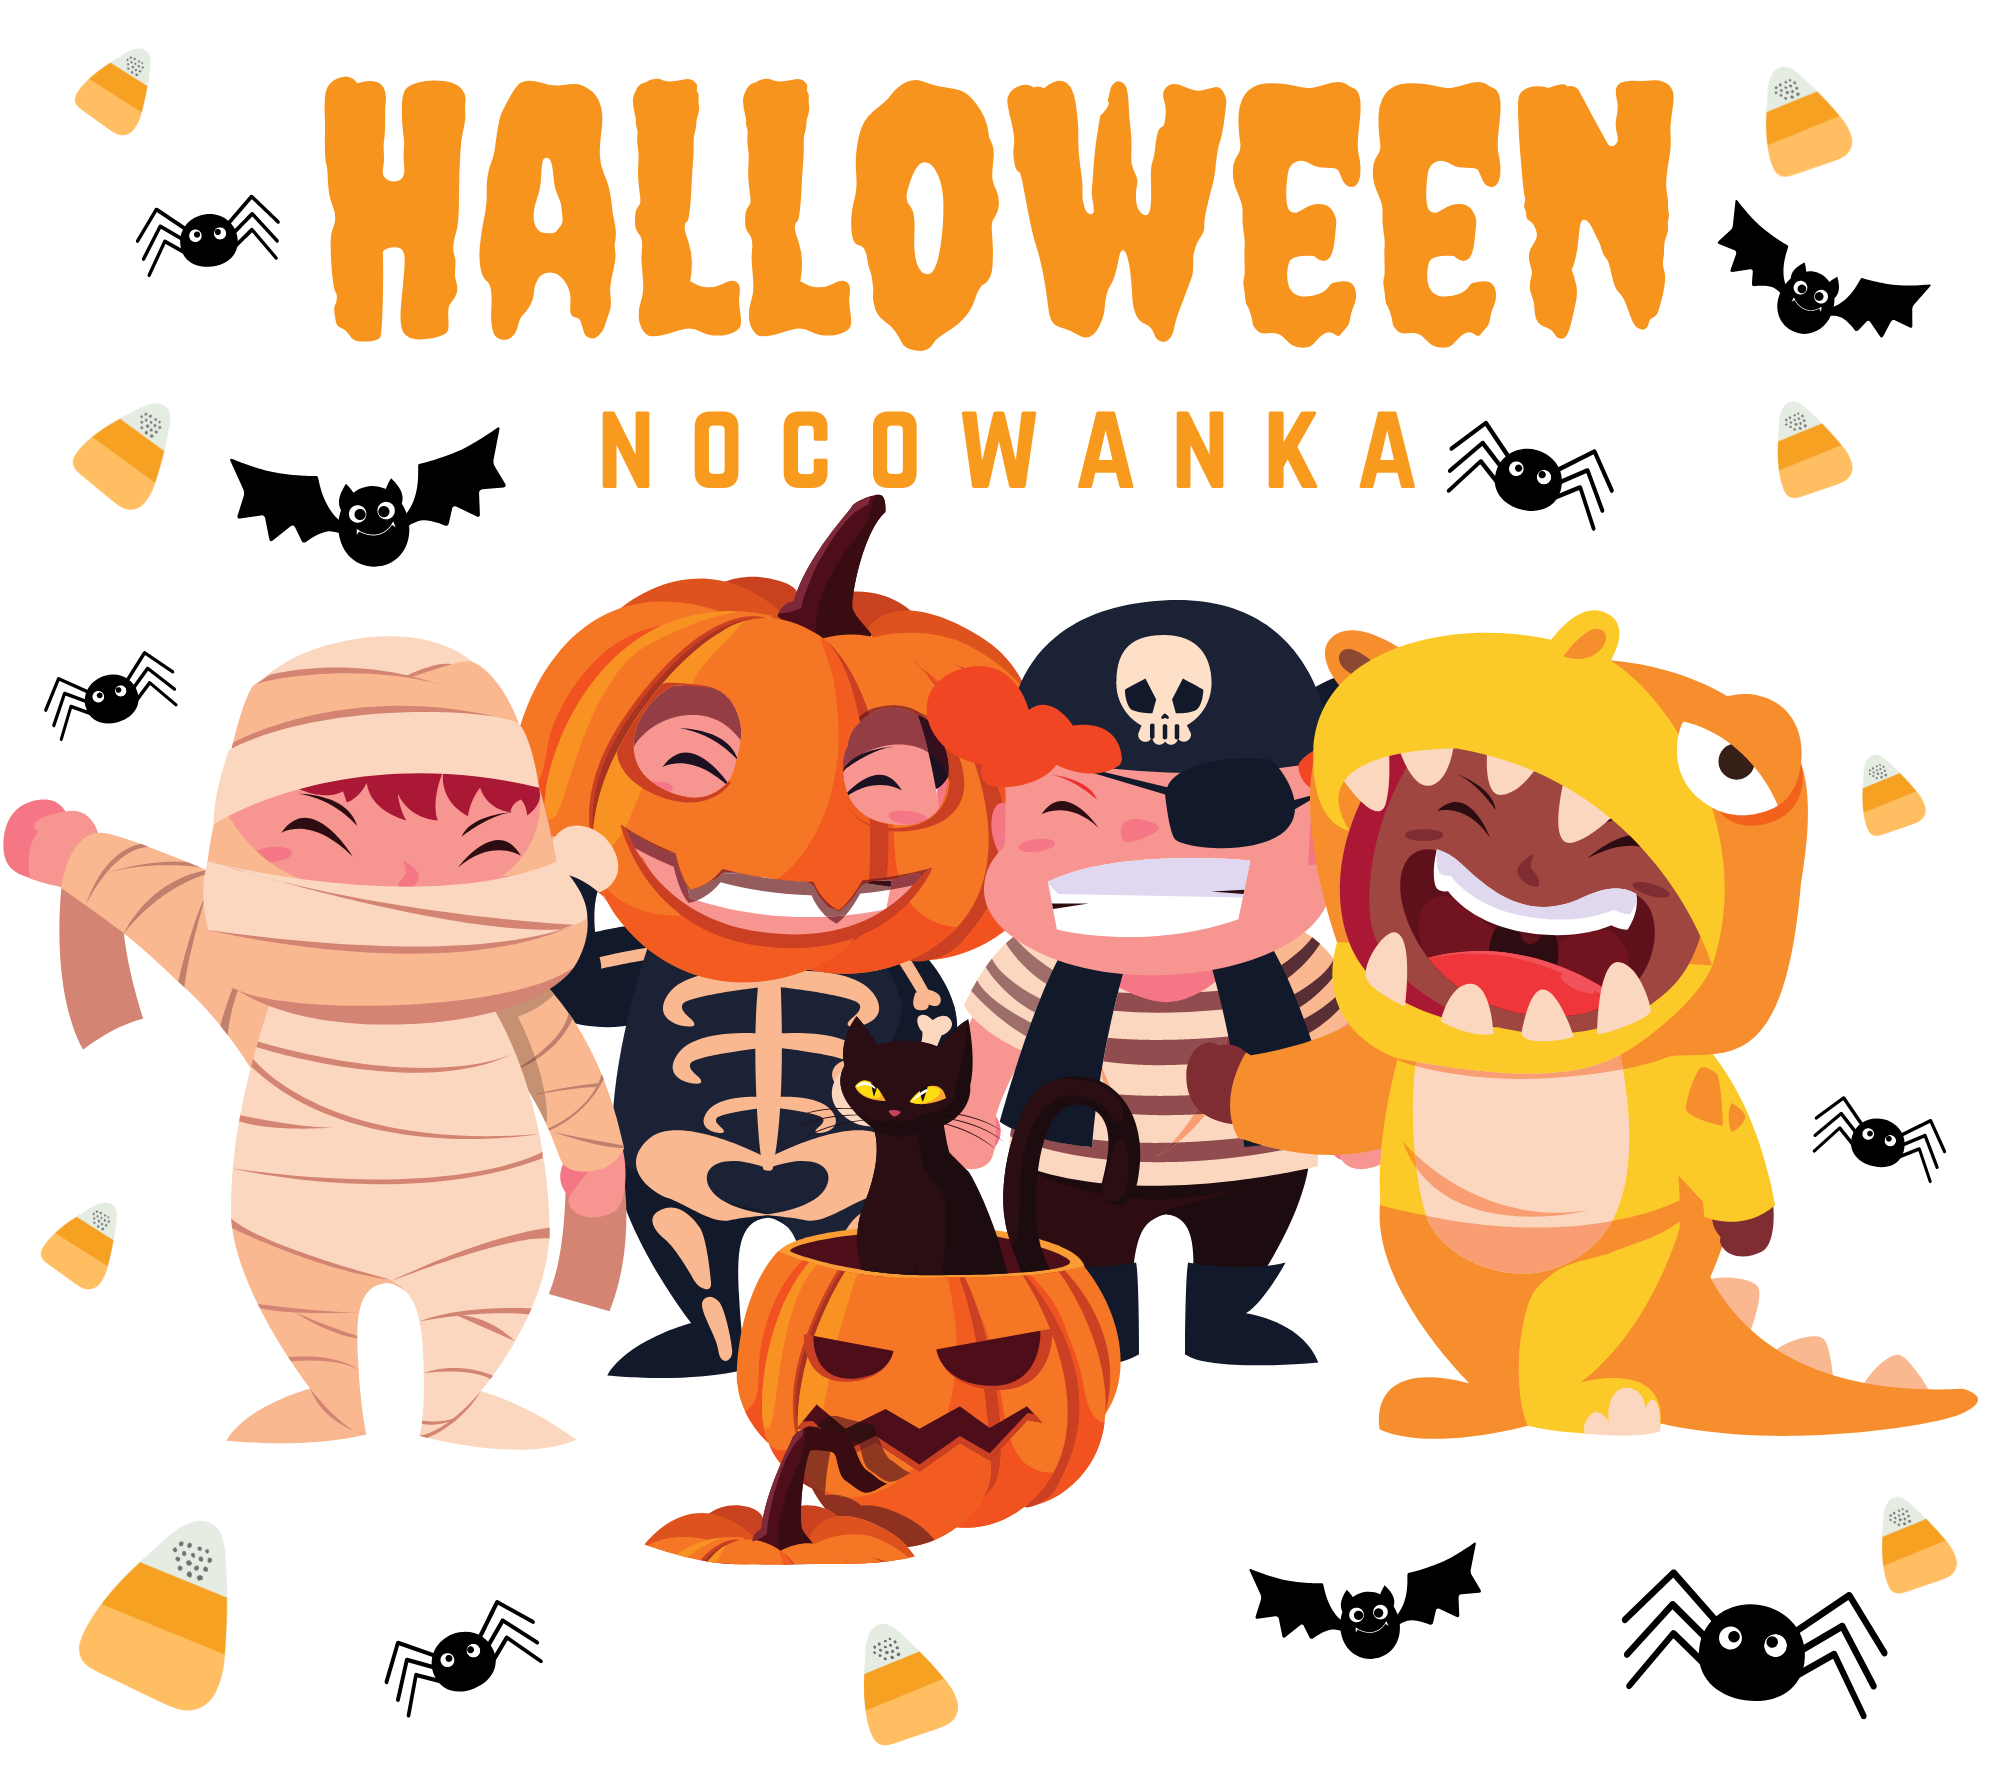 Halloween Nocowanka